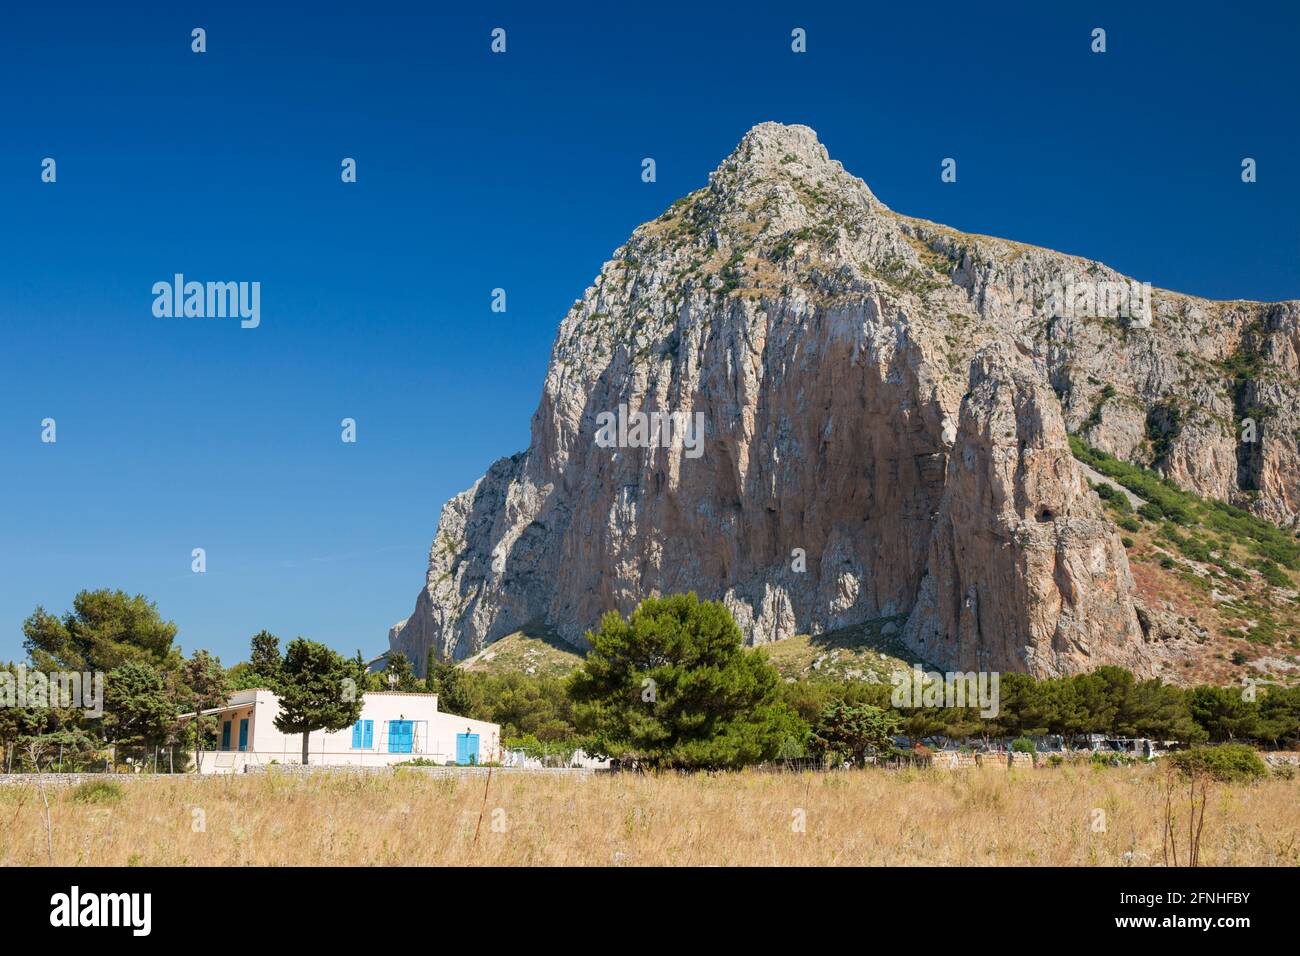 San Vito Lo Capo, Trapani, Sizilien, Italien. Isoliertes Dorfhaus, das von der aufragenden Nordwand des Monte Monaco in den Schatten gestellt wird. Stockfoto